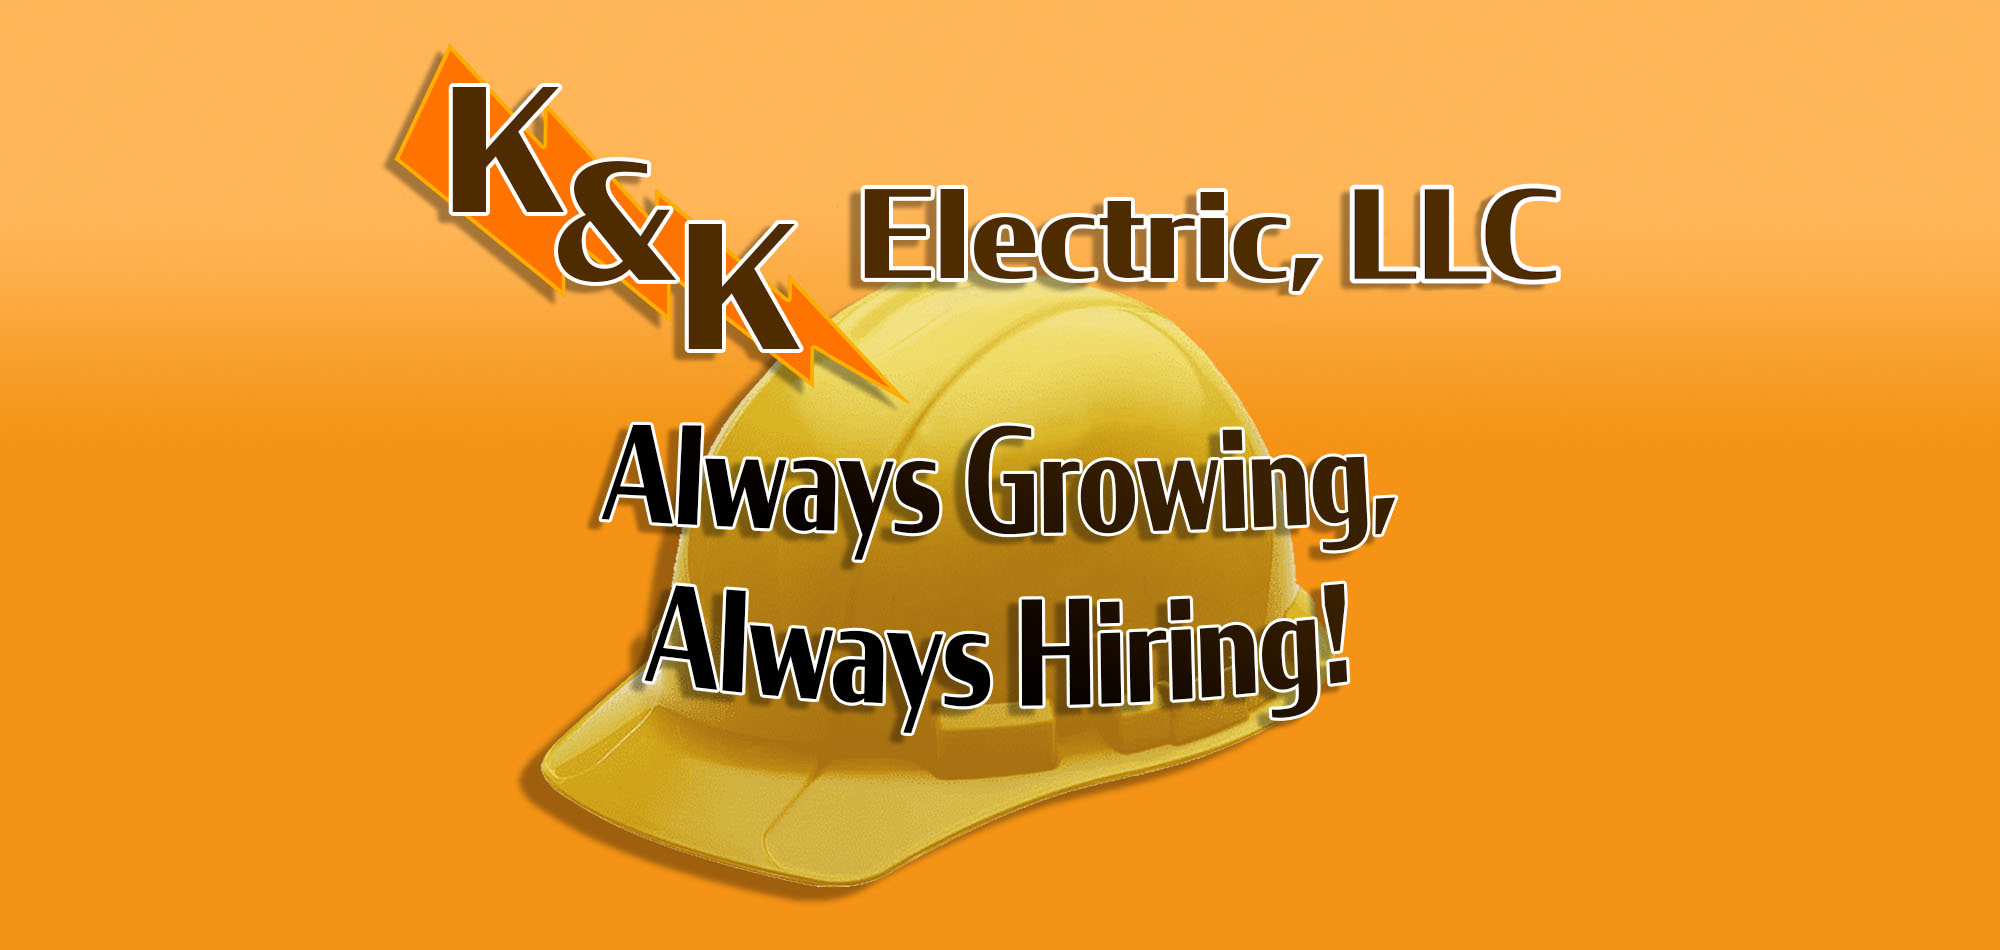 K&K Electric, Inc. - Always Growing, Always Hiring!